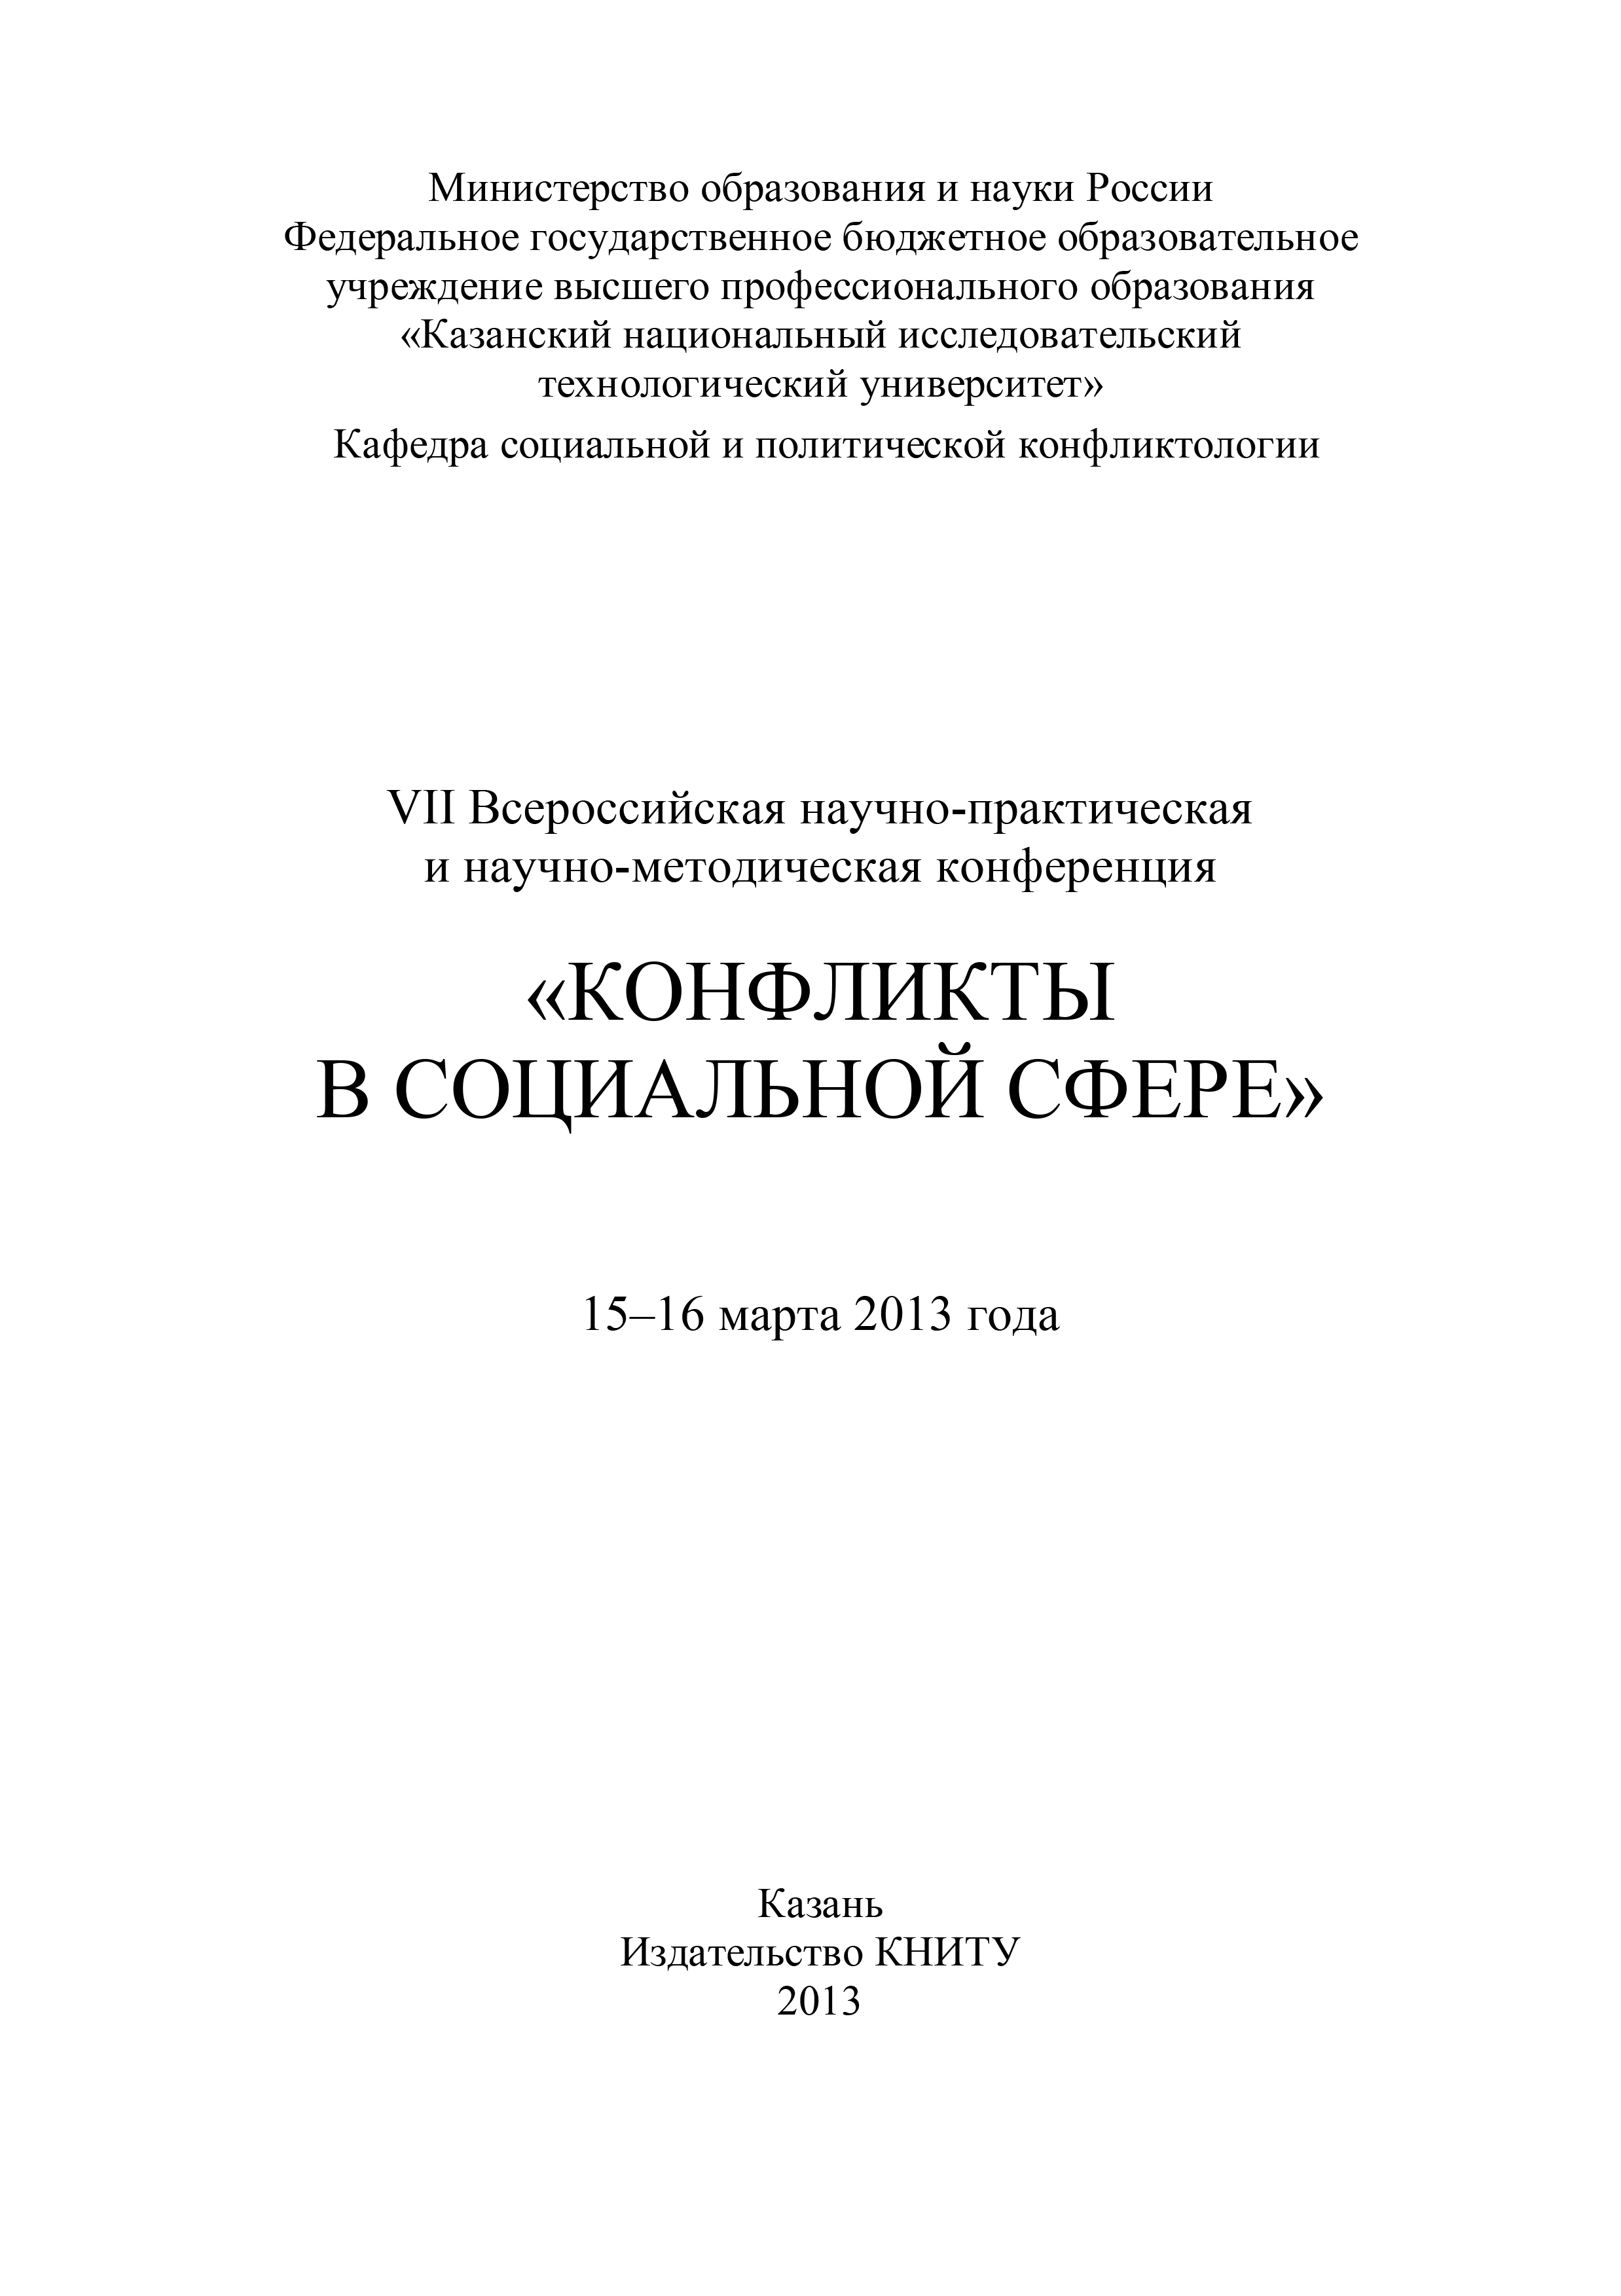 VIIВсероссийская научно-практическая и научно-методическая конференция «Конфликты в социальной сфере», 15–16 марта 2013 года